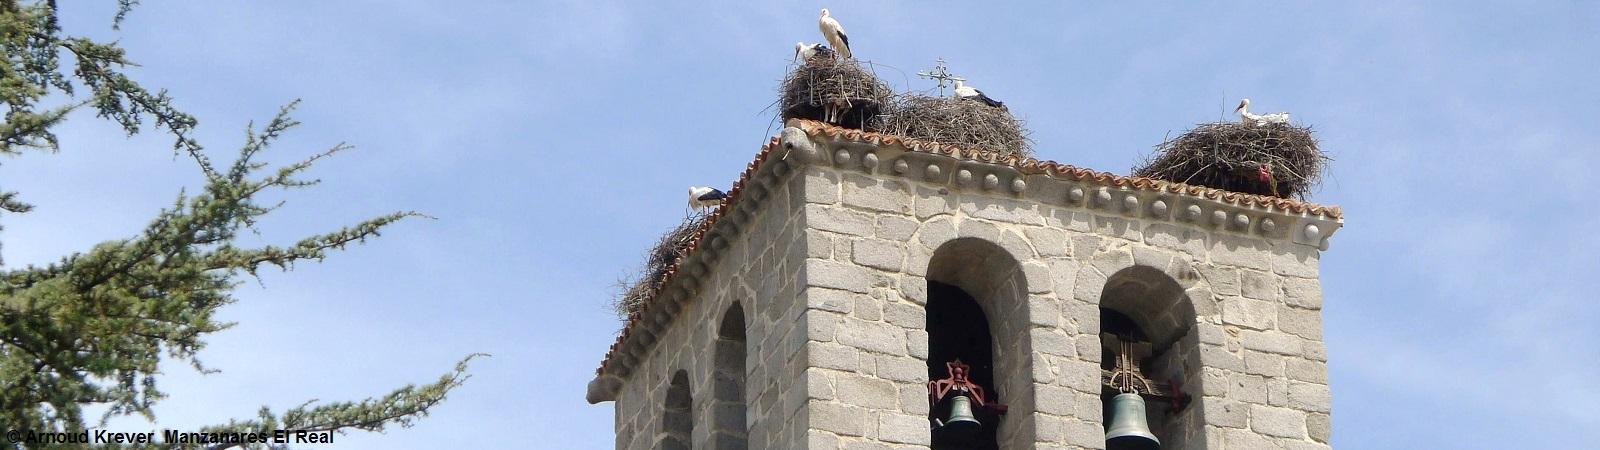 14CM (176) Manzanares El Real, kerktoren met ooievaars